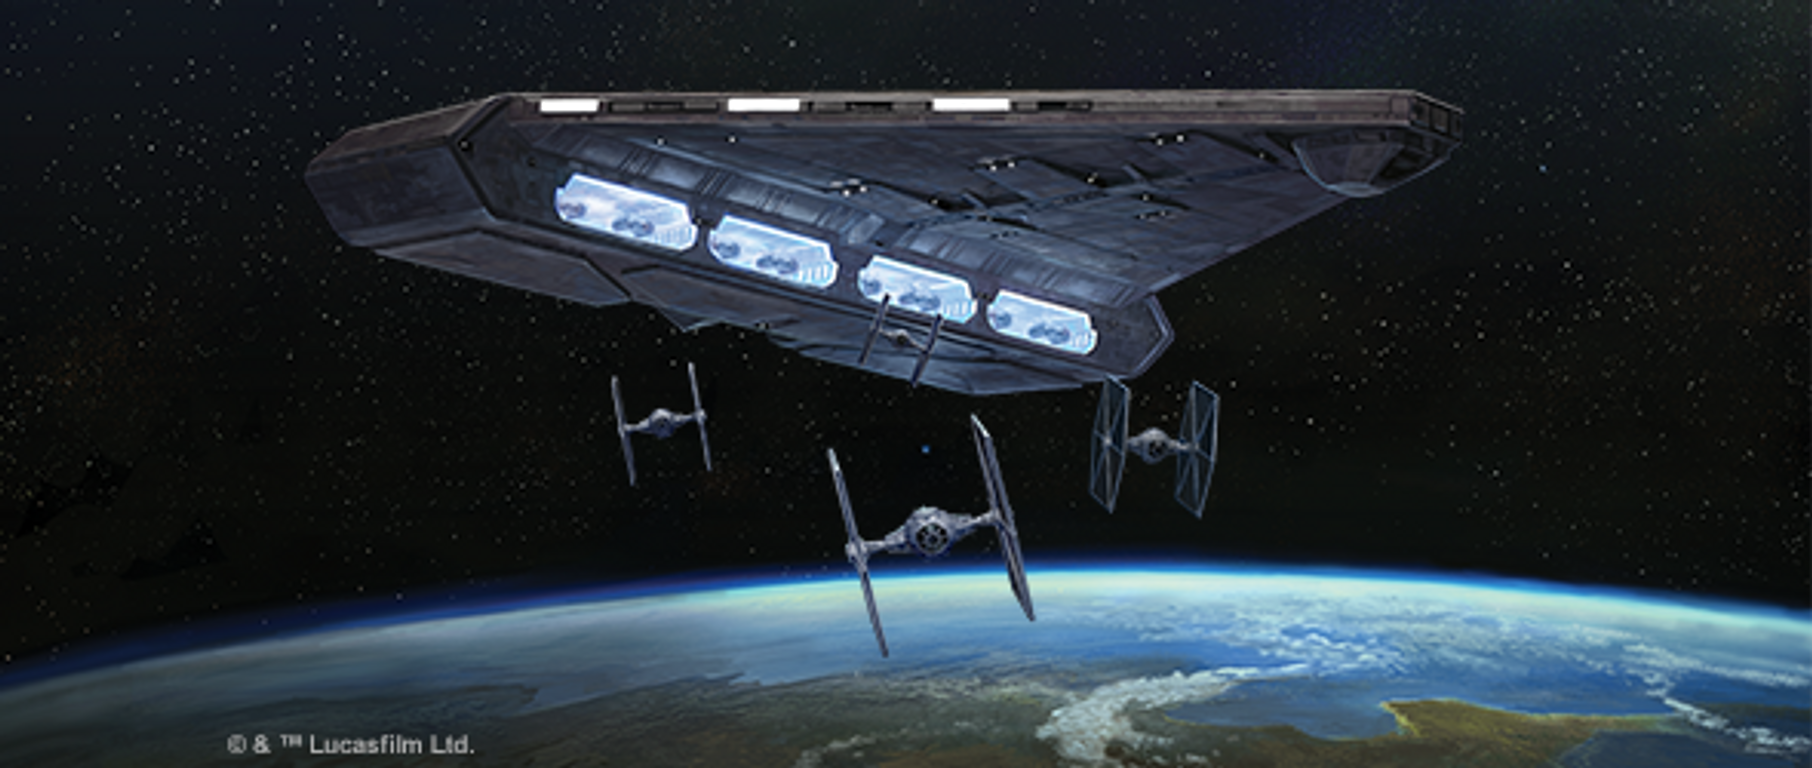 Star Wars: Armada – Imperialer Leichter Träger Erweiterungs-Pack spielablauf